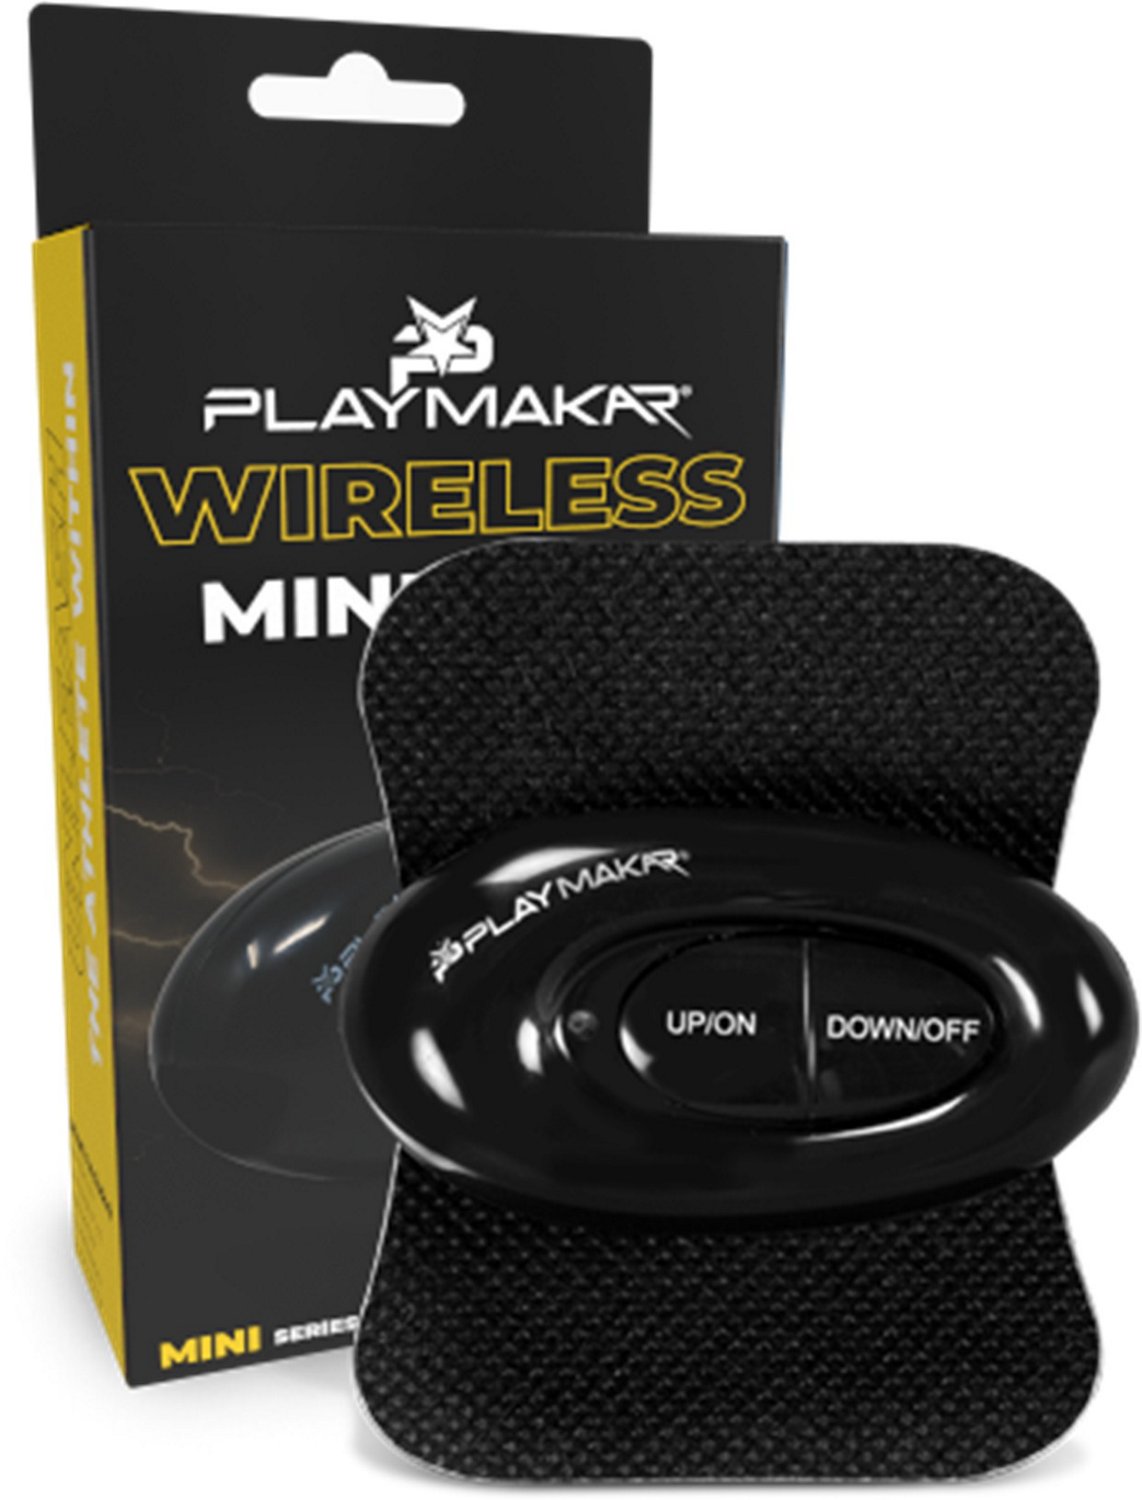 PlayMakar Mini Wireless TENS Unit